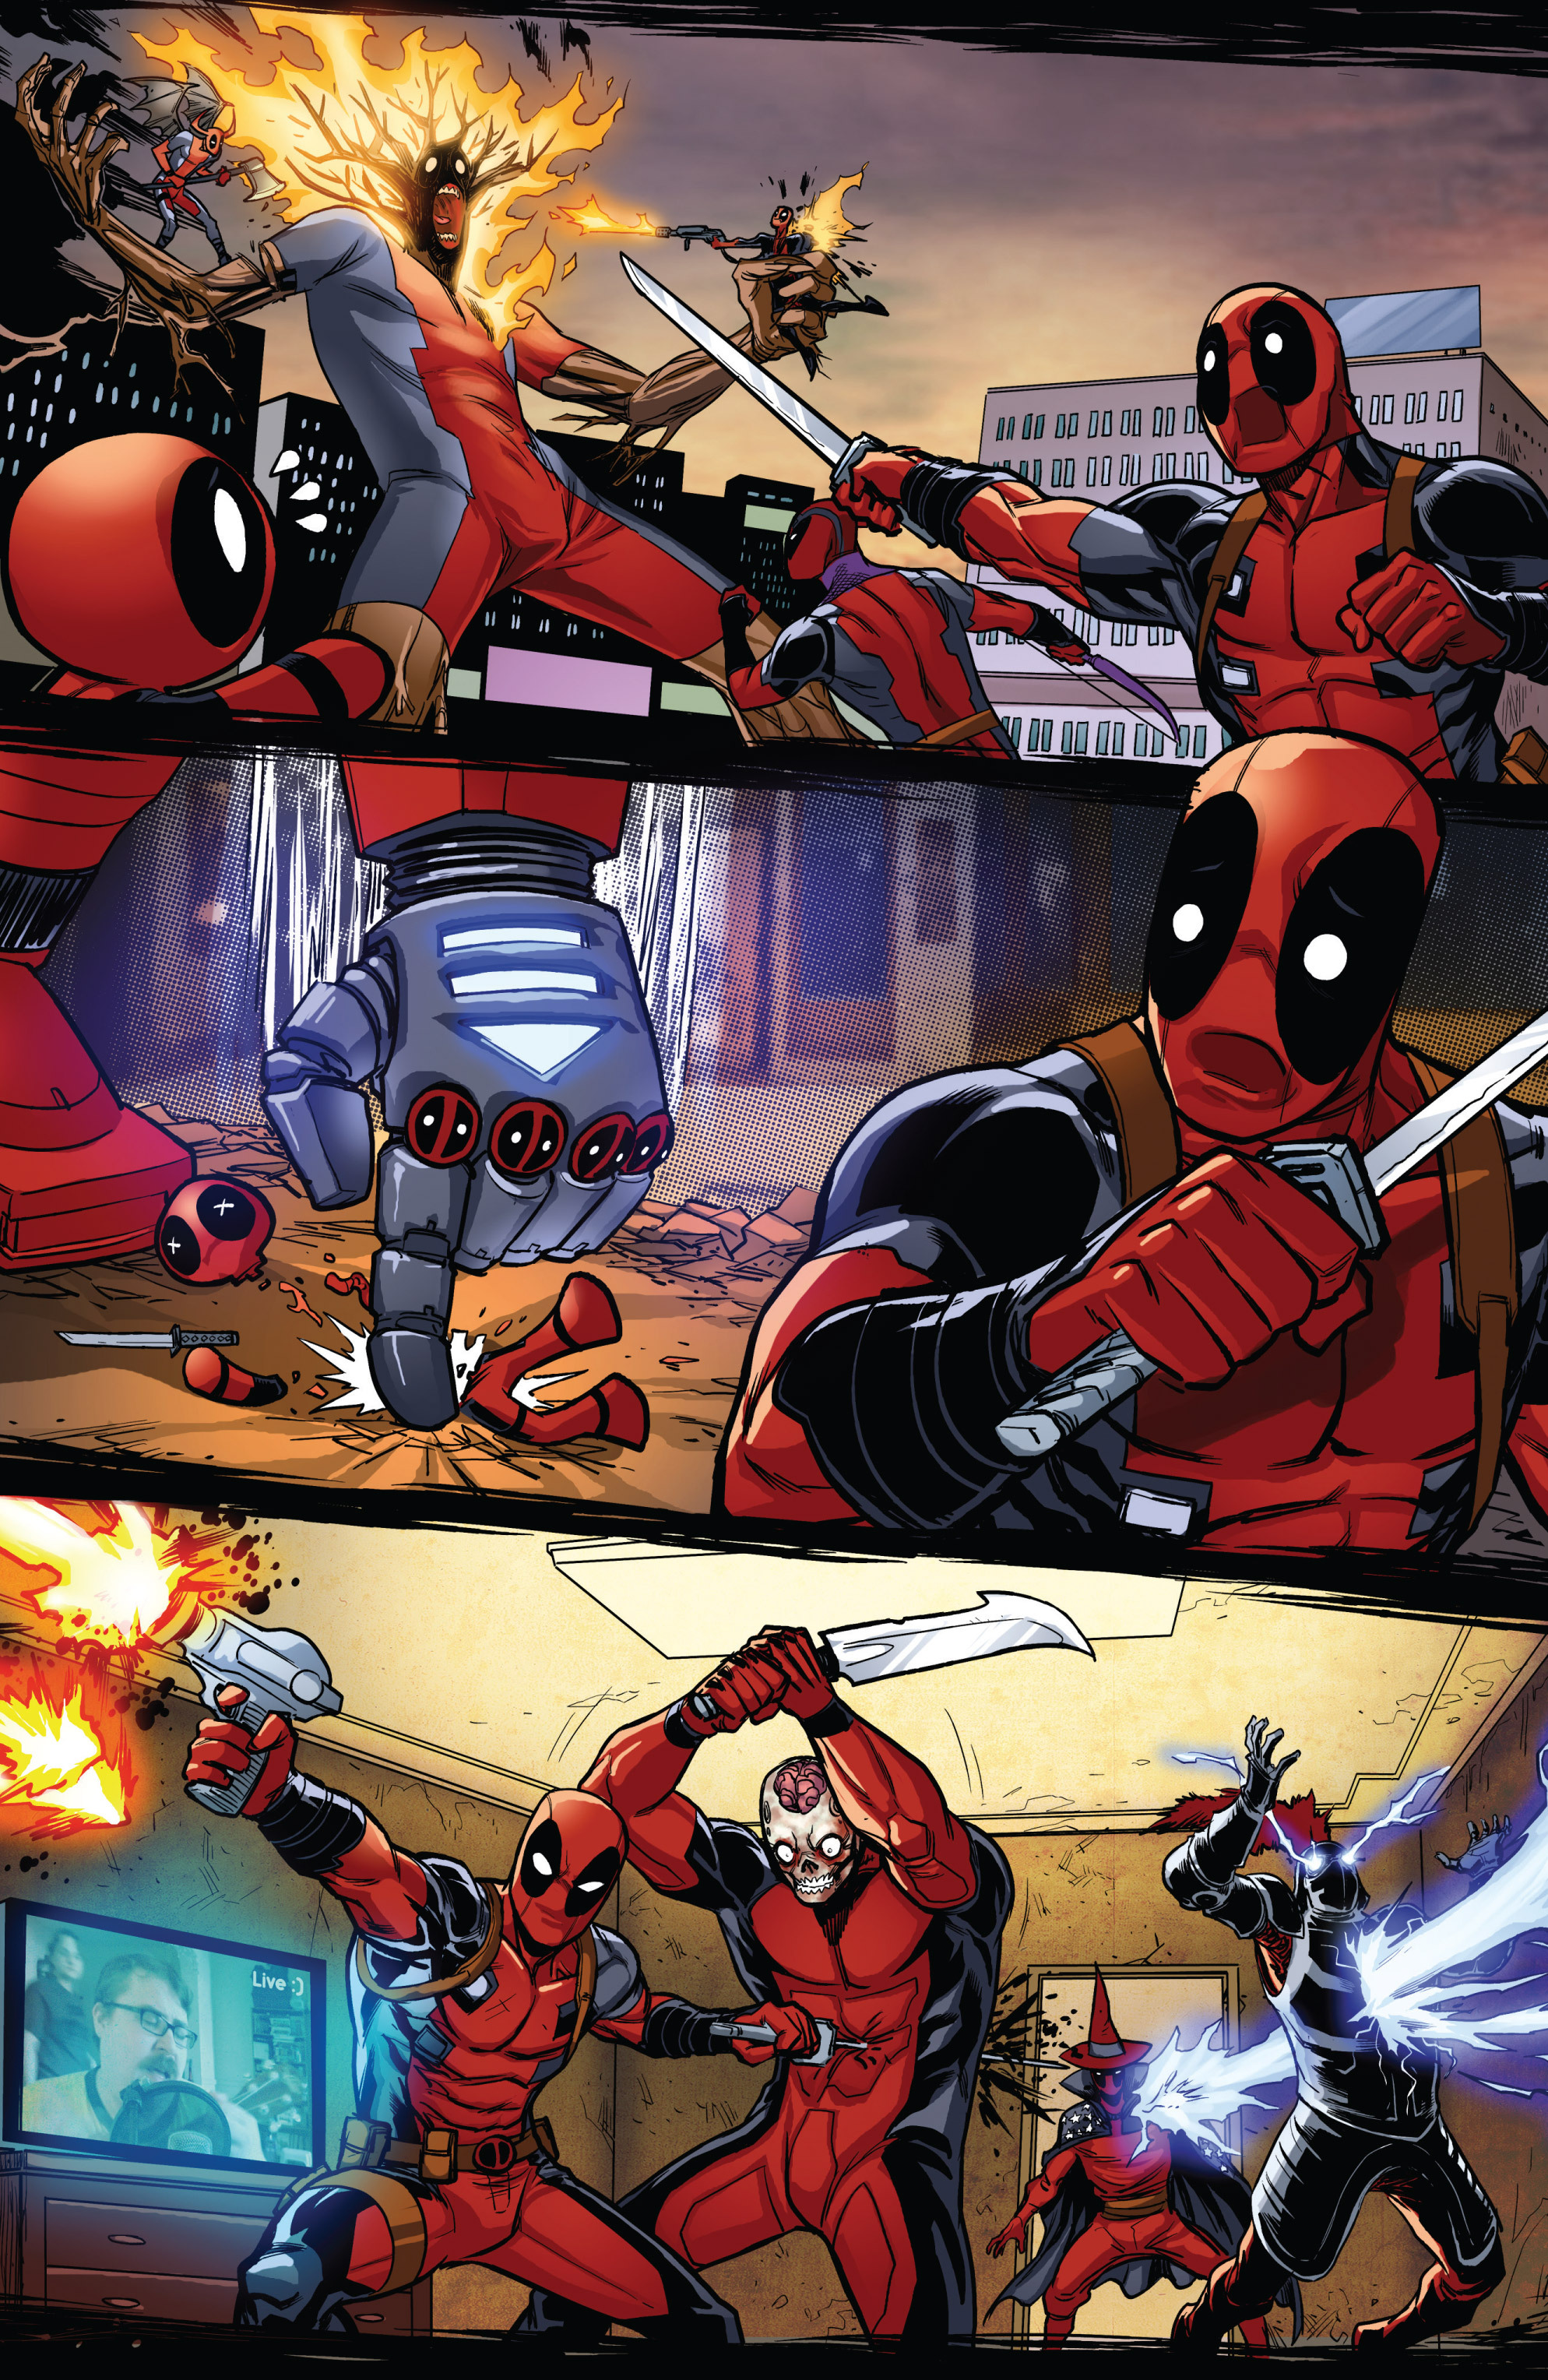 Deadpool Kills Deadpool Issue 4 | Read Deadpool Kills Deadpool Issue 4